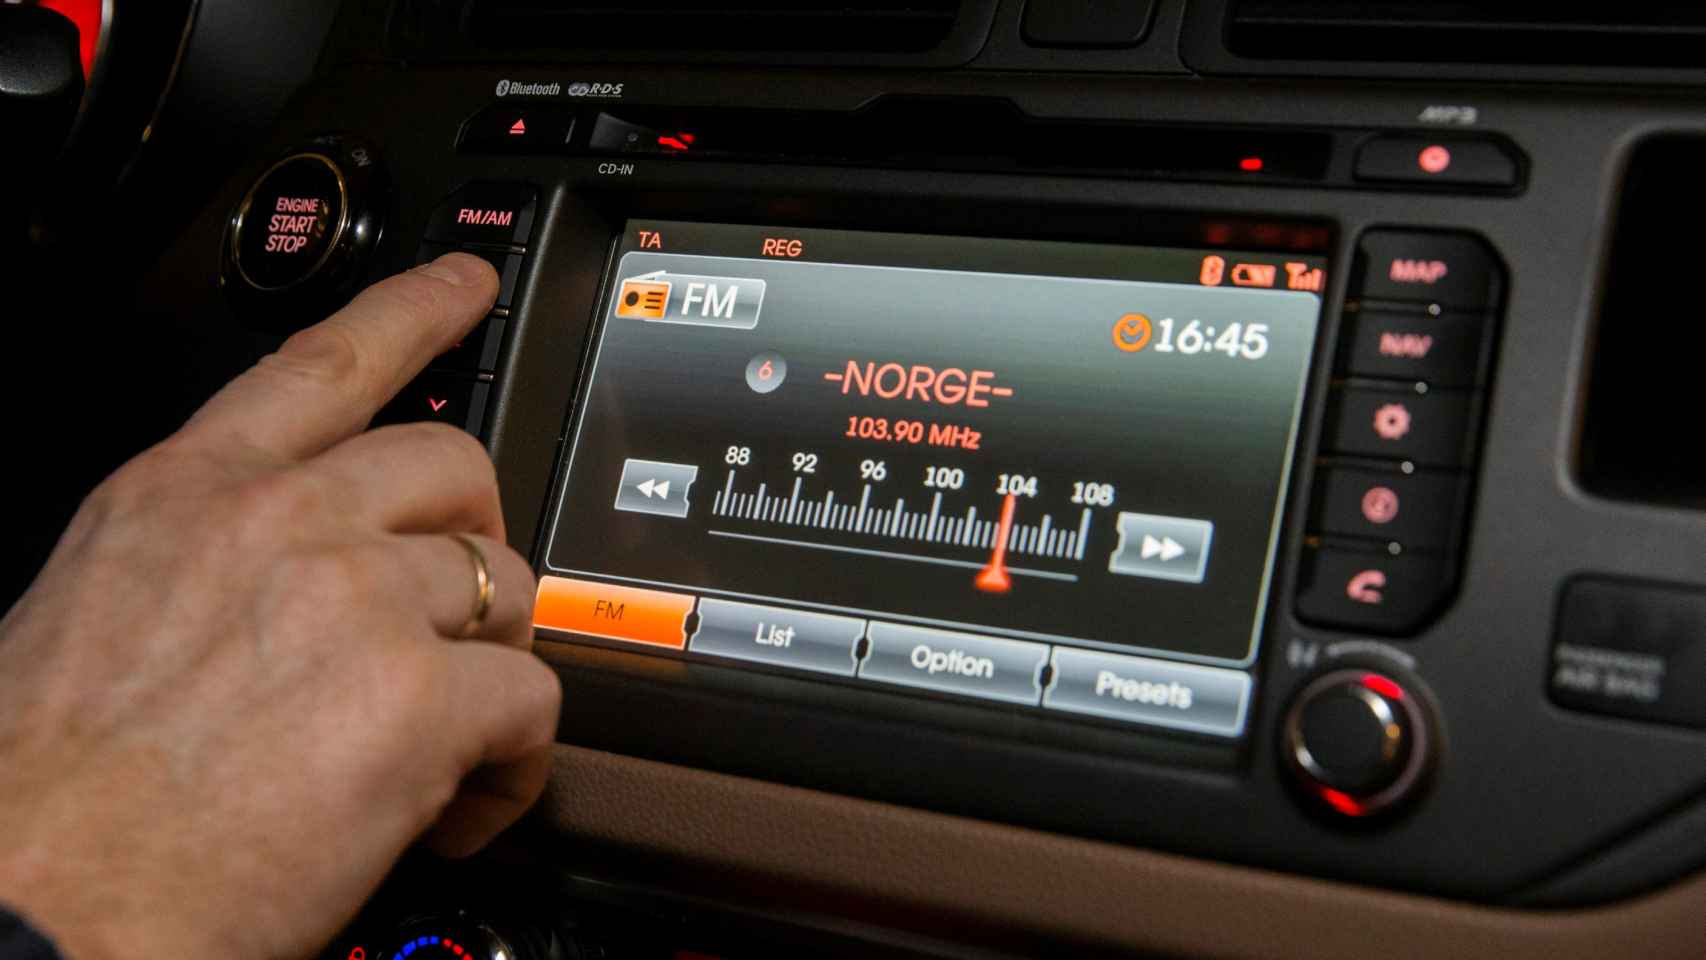 Un noruego sintoniza la radio de su coche en FM.